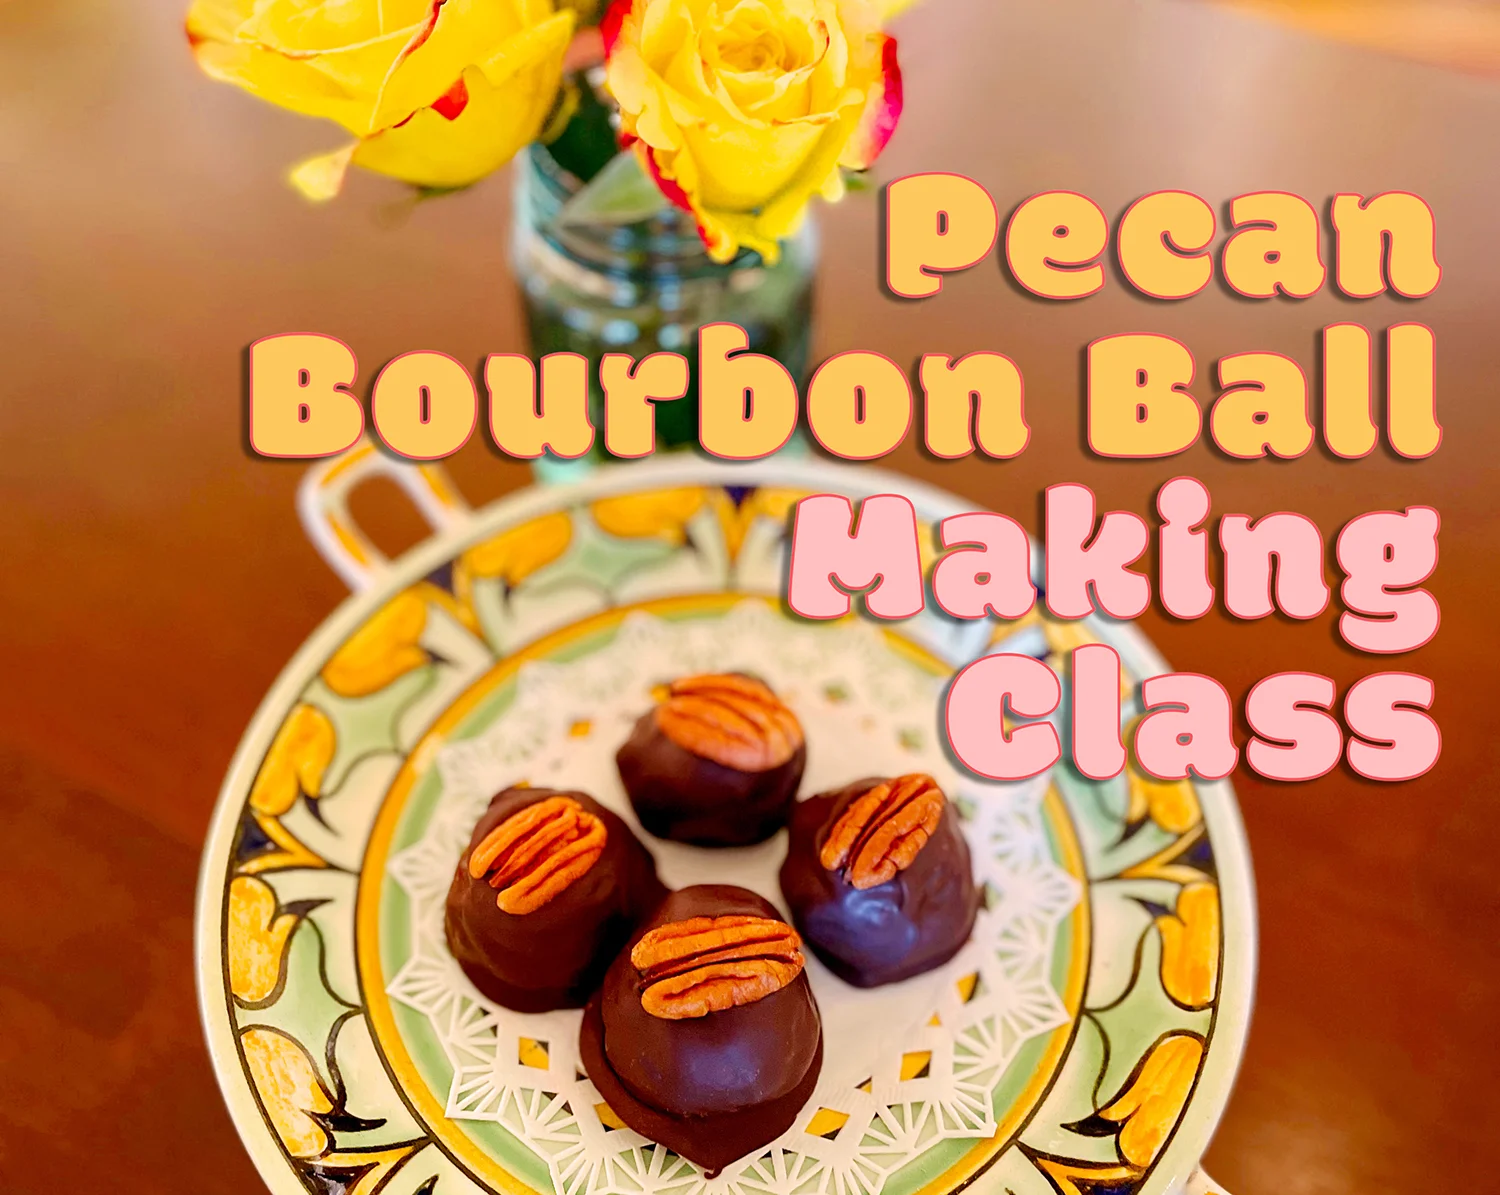 A Pecan Bourbon Ball Making Class